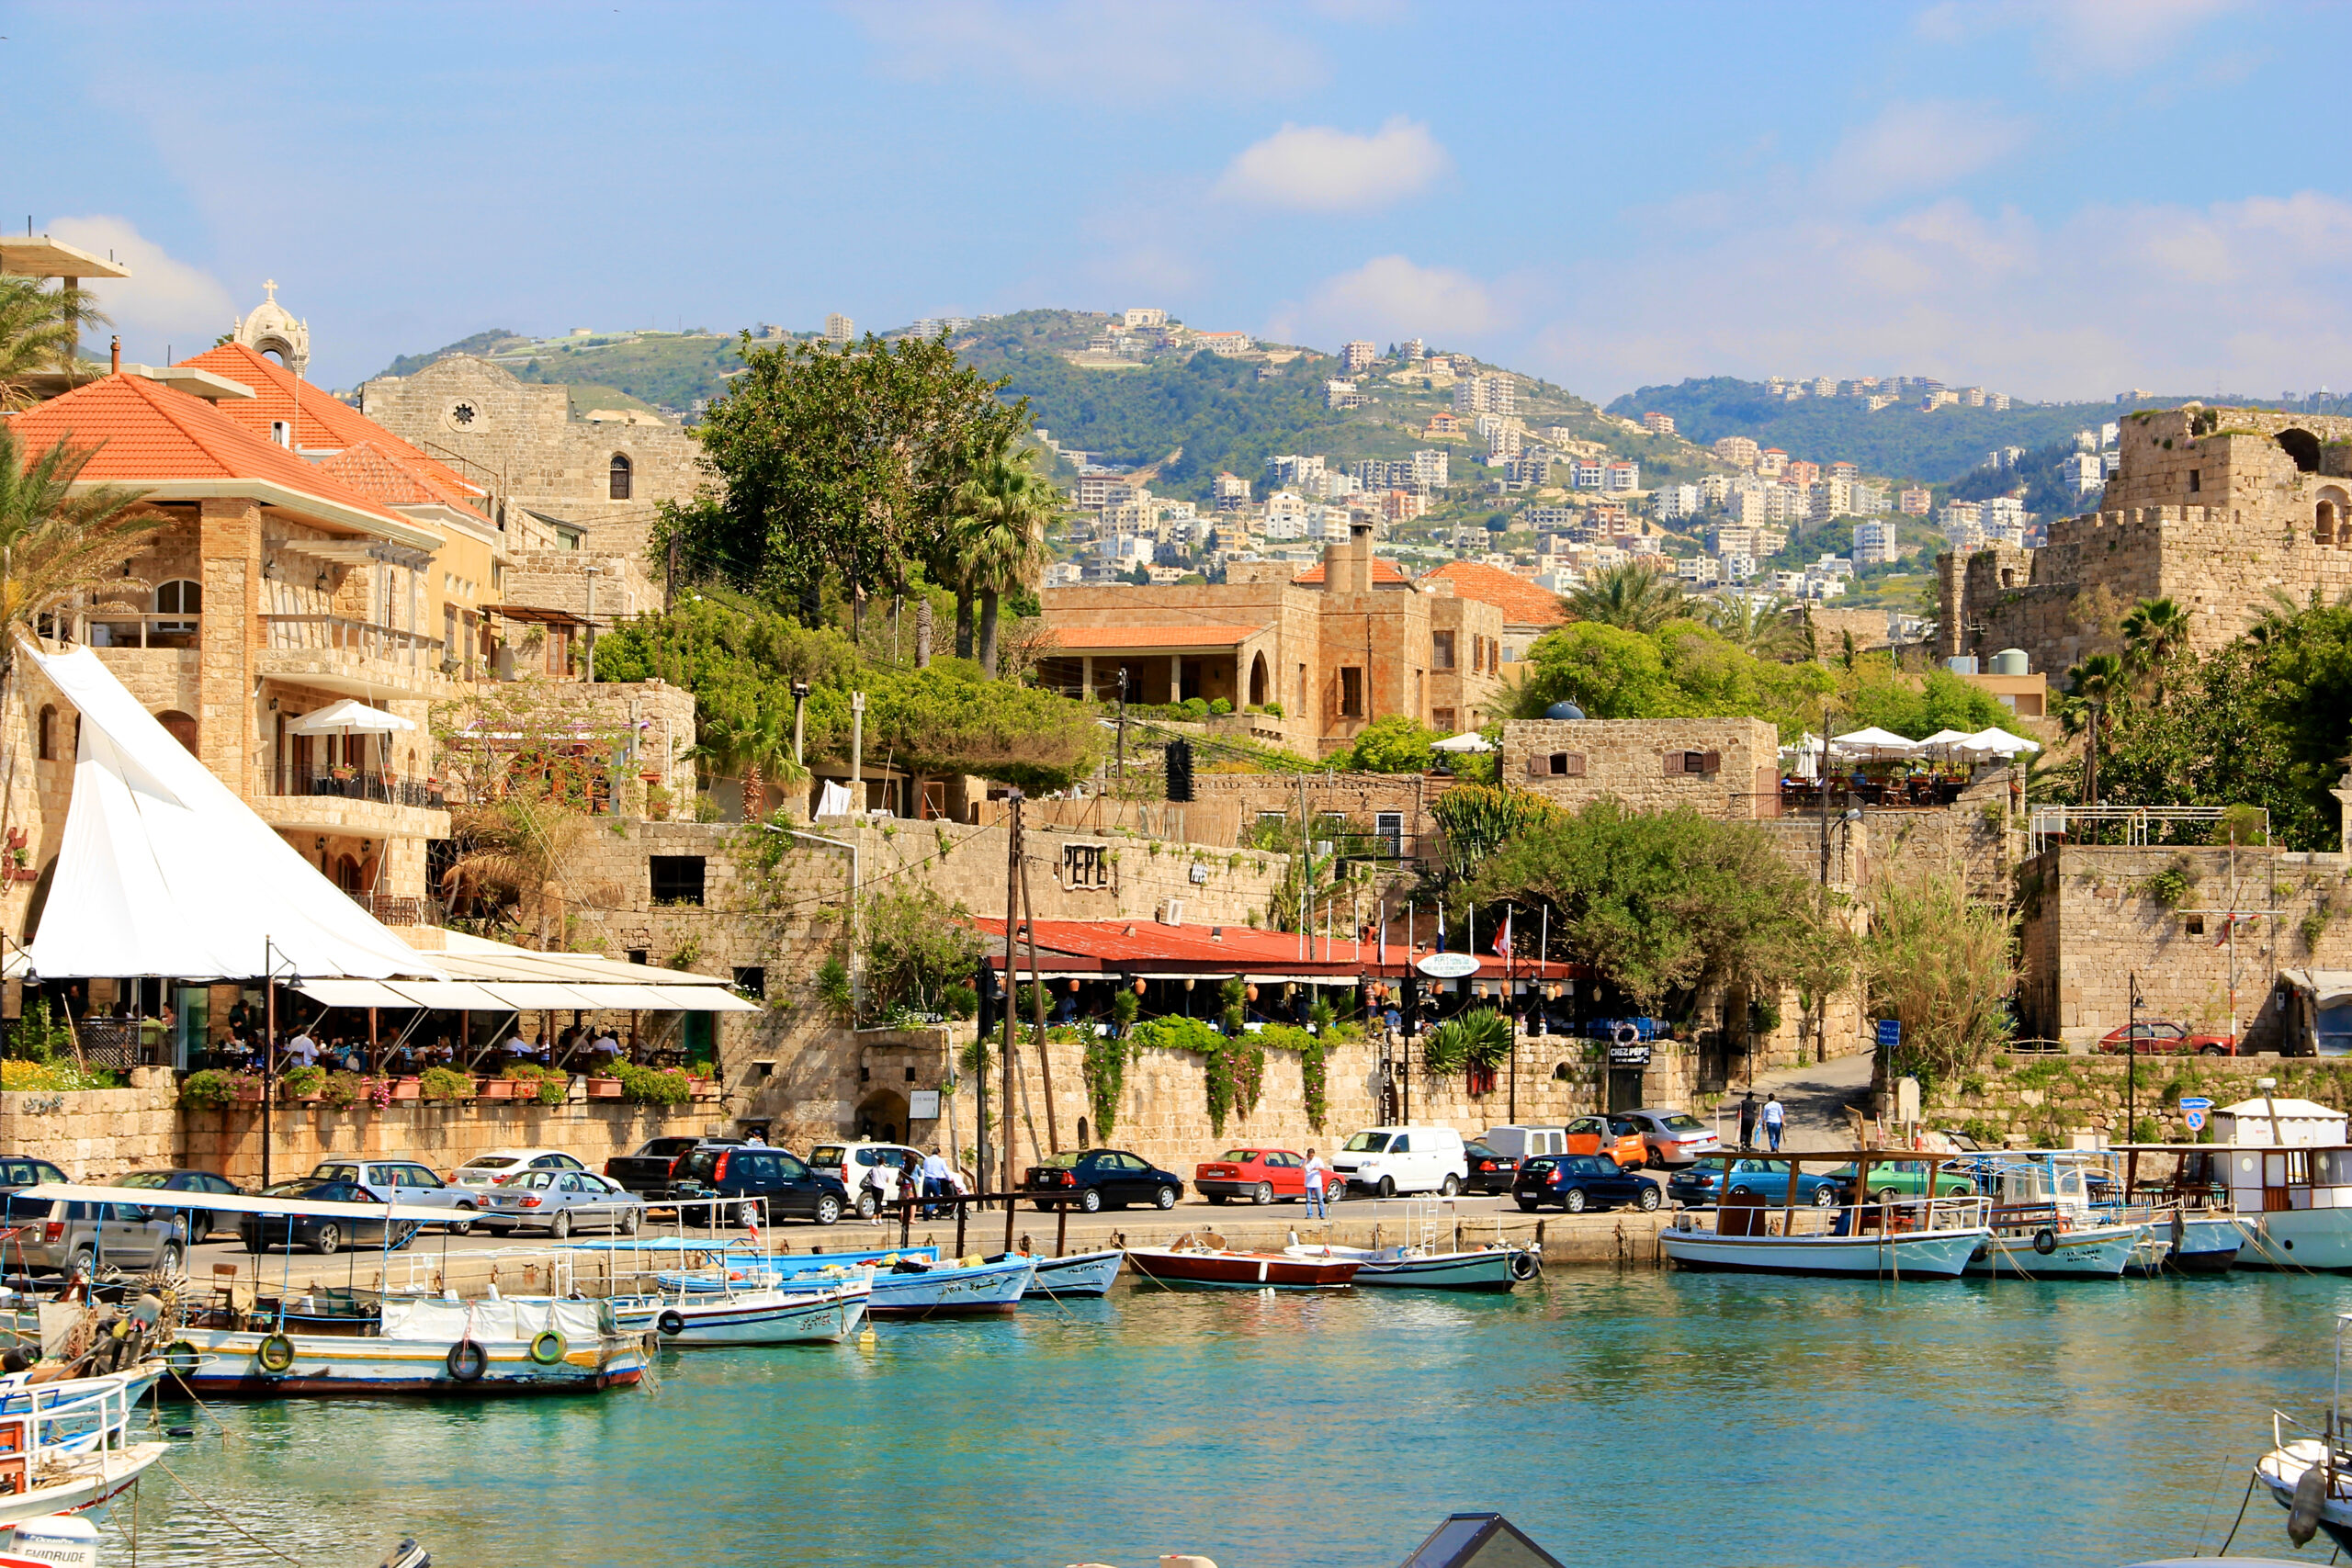 Liban, sursa foto dreamstime